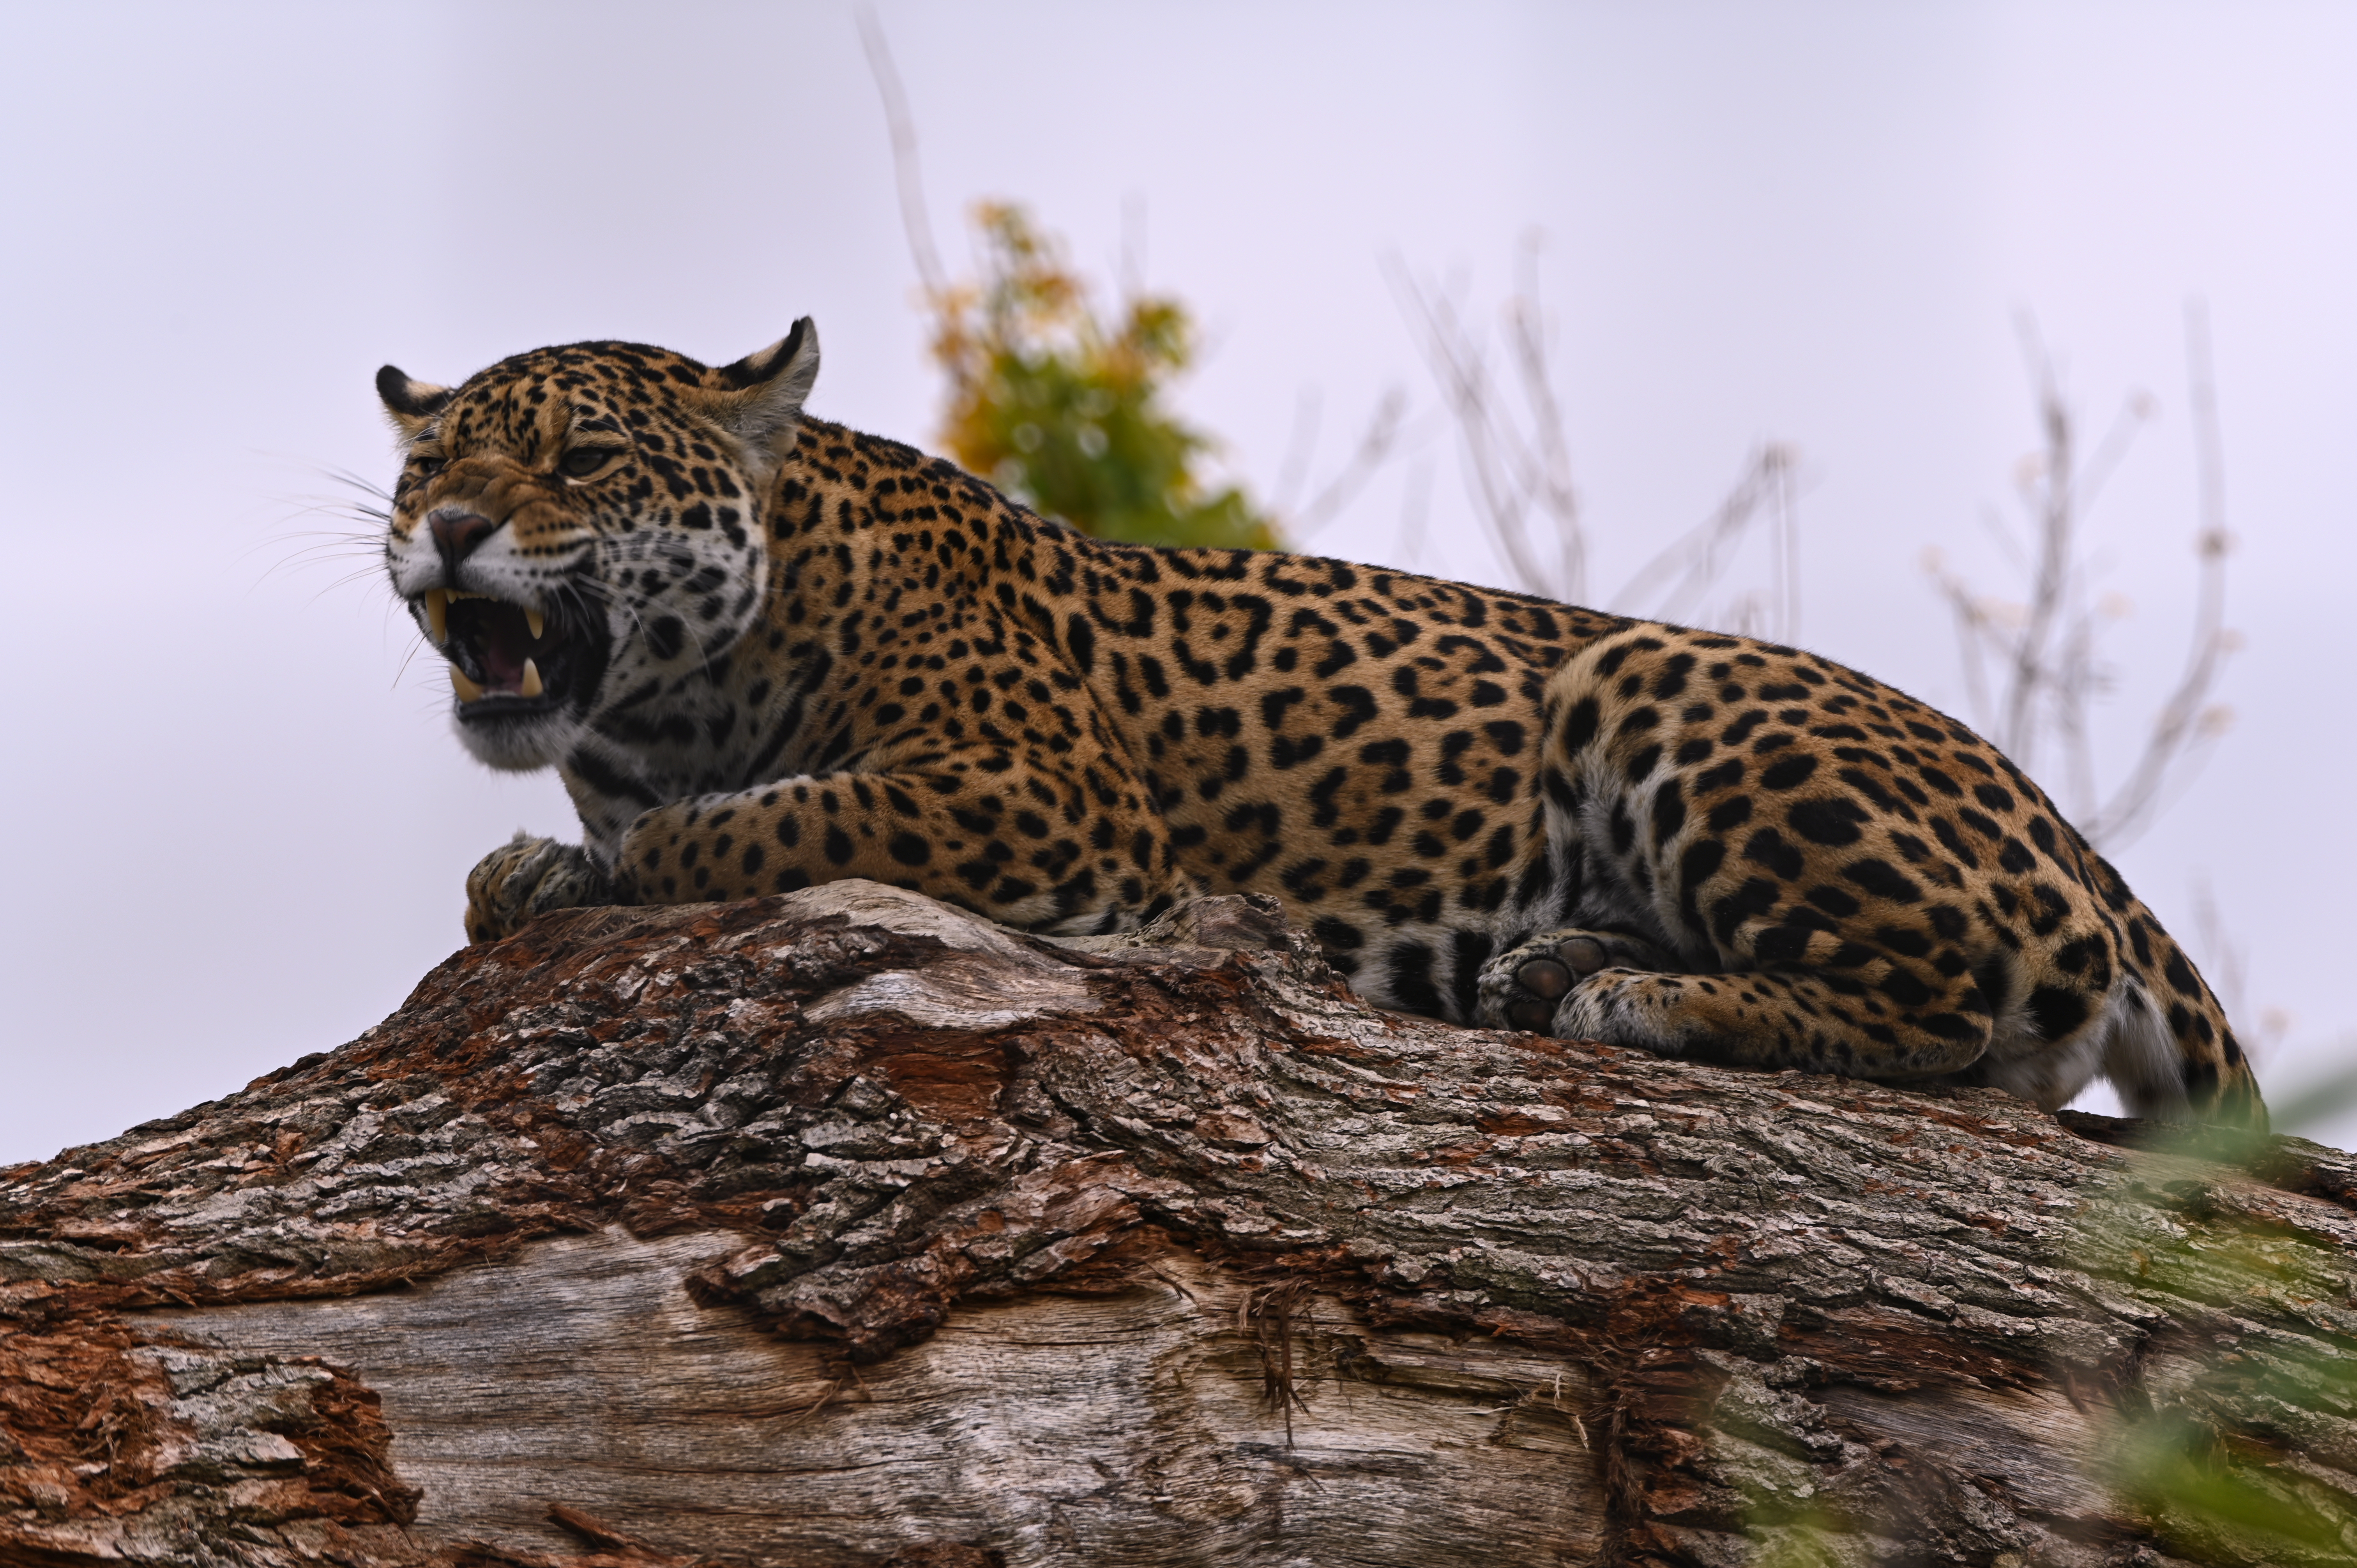 General 6048x4024 wildlife nature feline big cats mammals jaguars